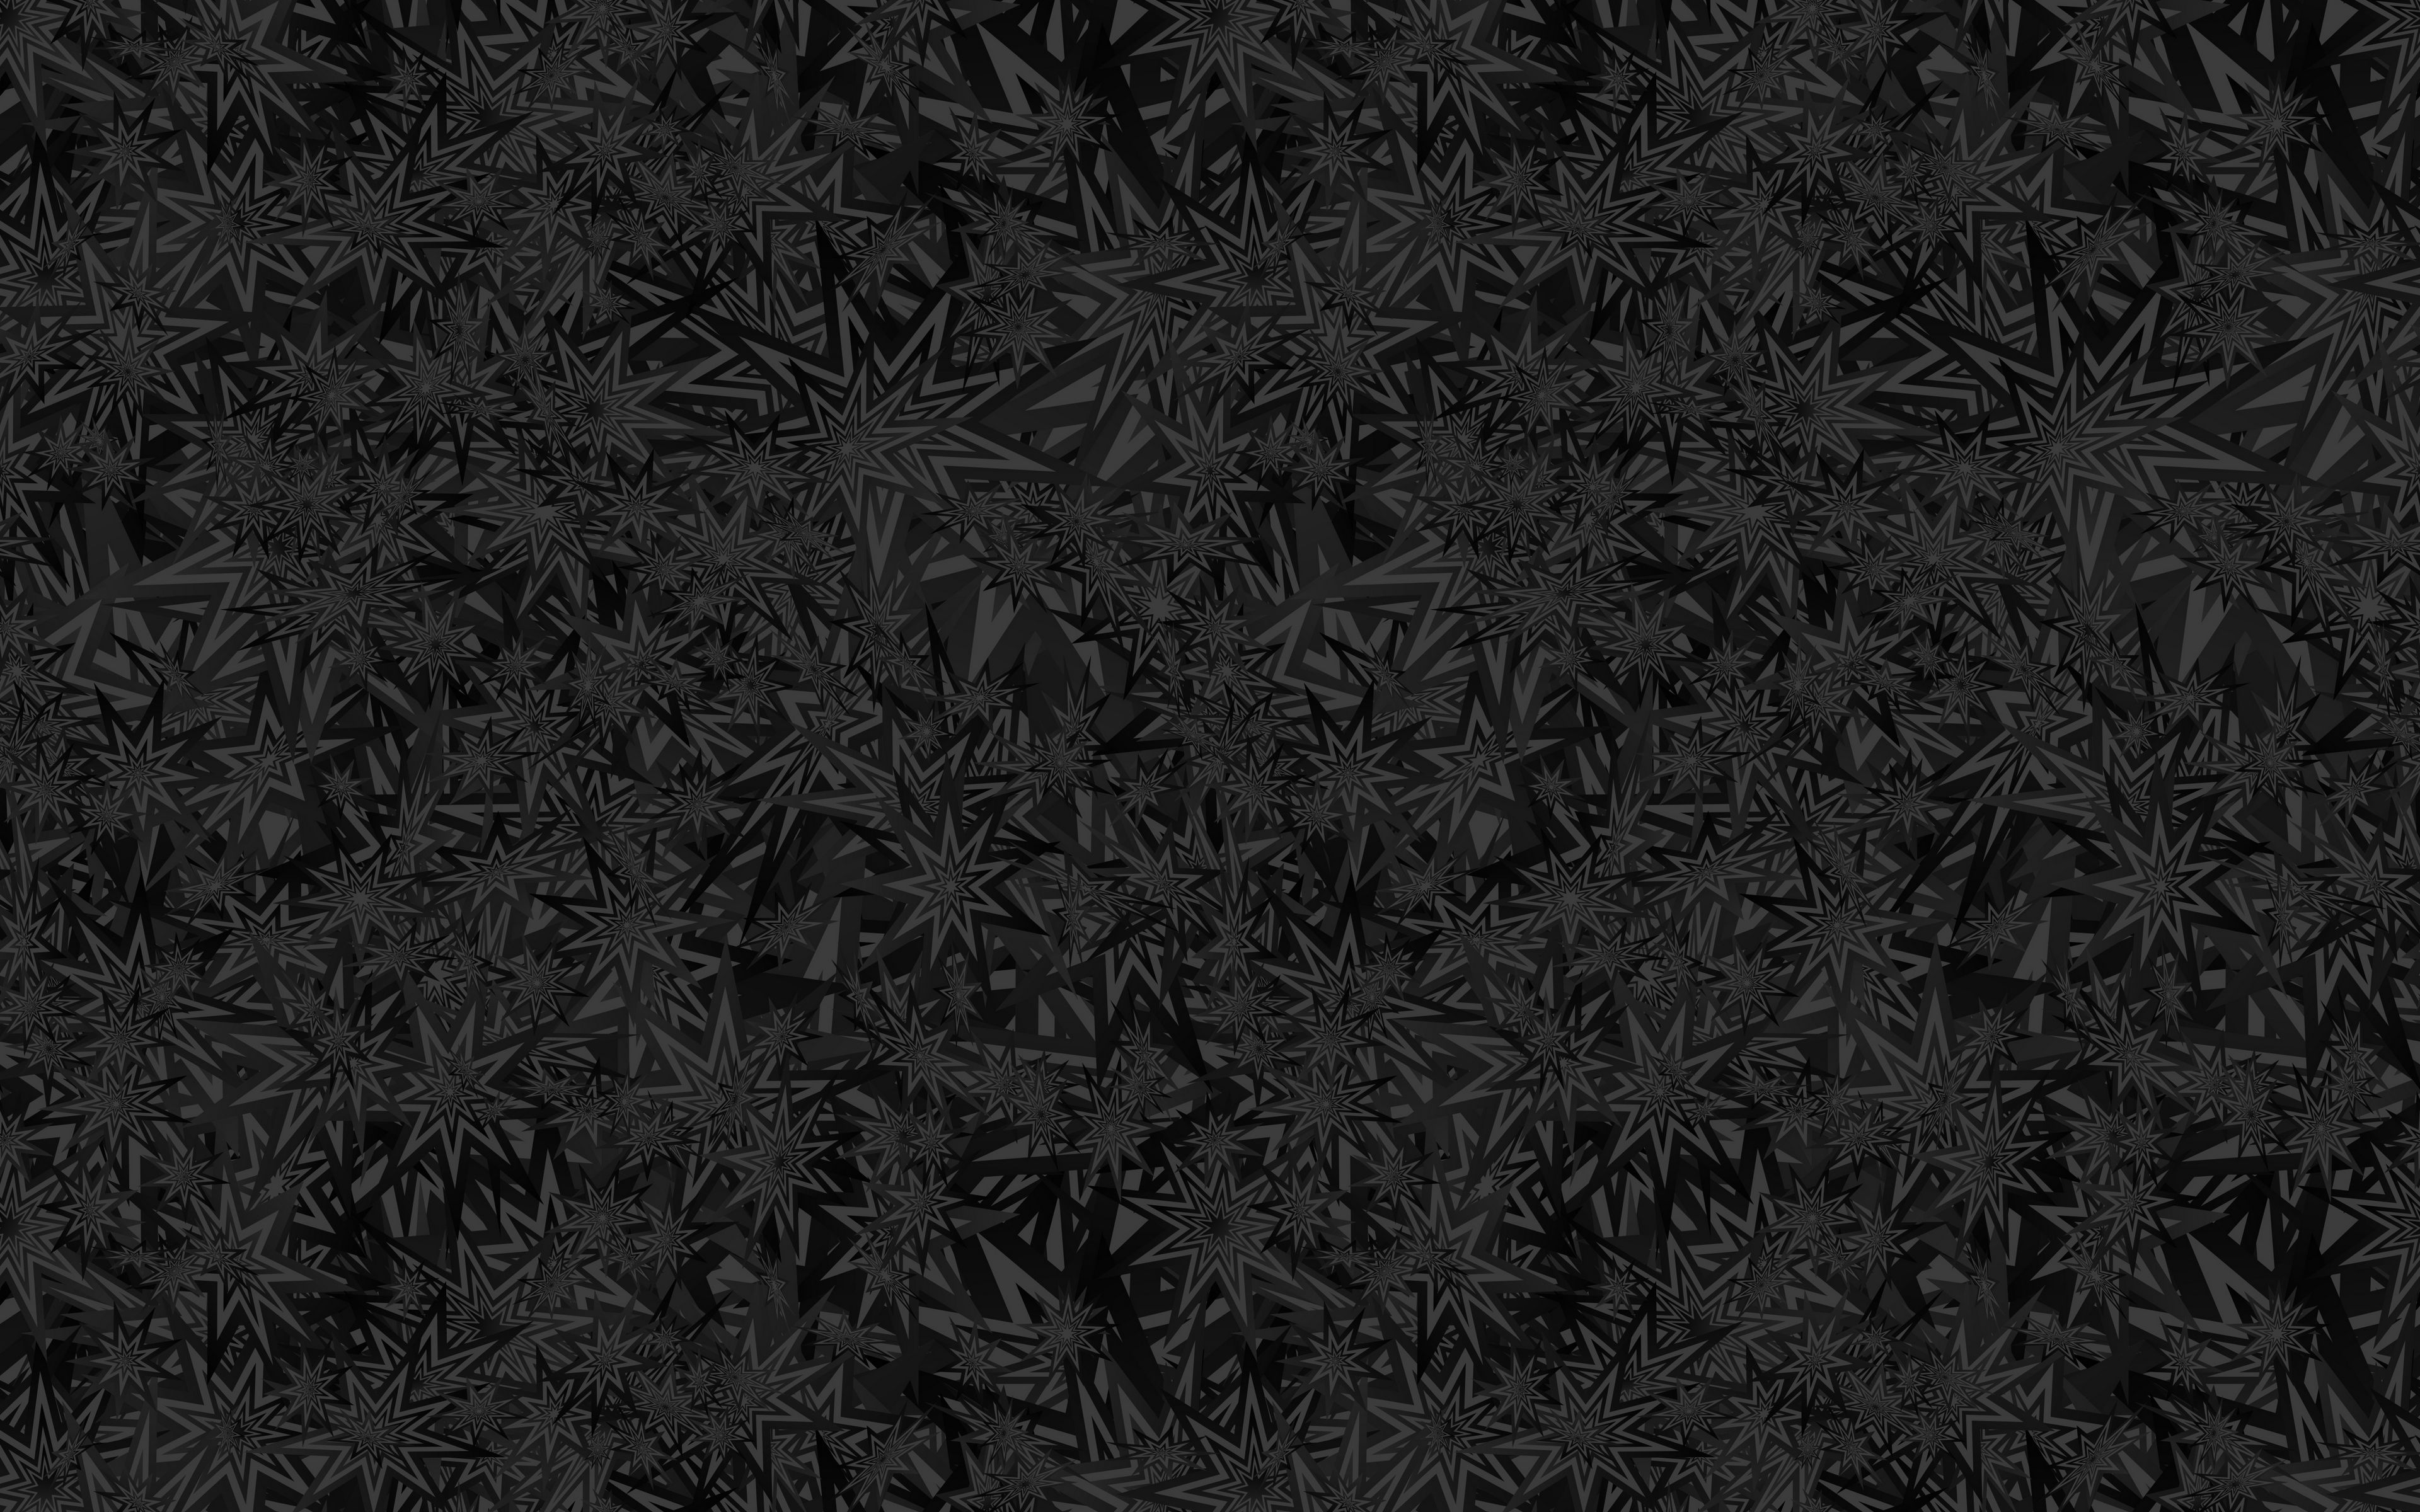 Hình nền 3840x2400 với nền đen kết hợp cùng sao và hoa văn thật độc đáo và tinh tế. Bạn sẽ cảm nhận được vẻ đẹp đầy bí ẩn của không gian vũ trụ khi ngắm nhìn bức hình này.